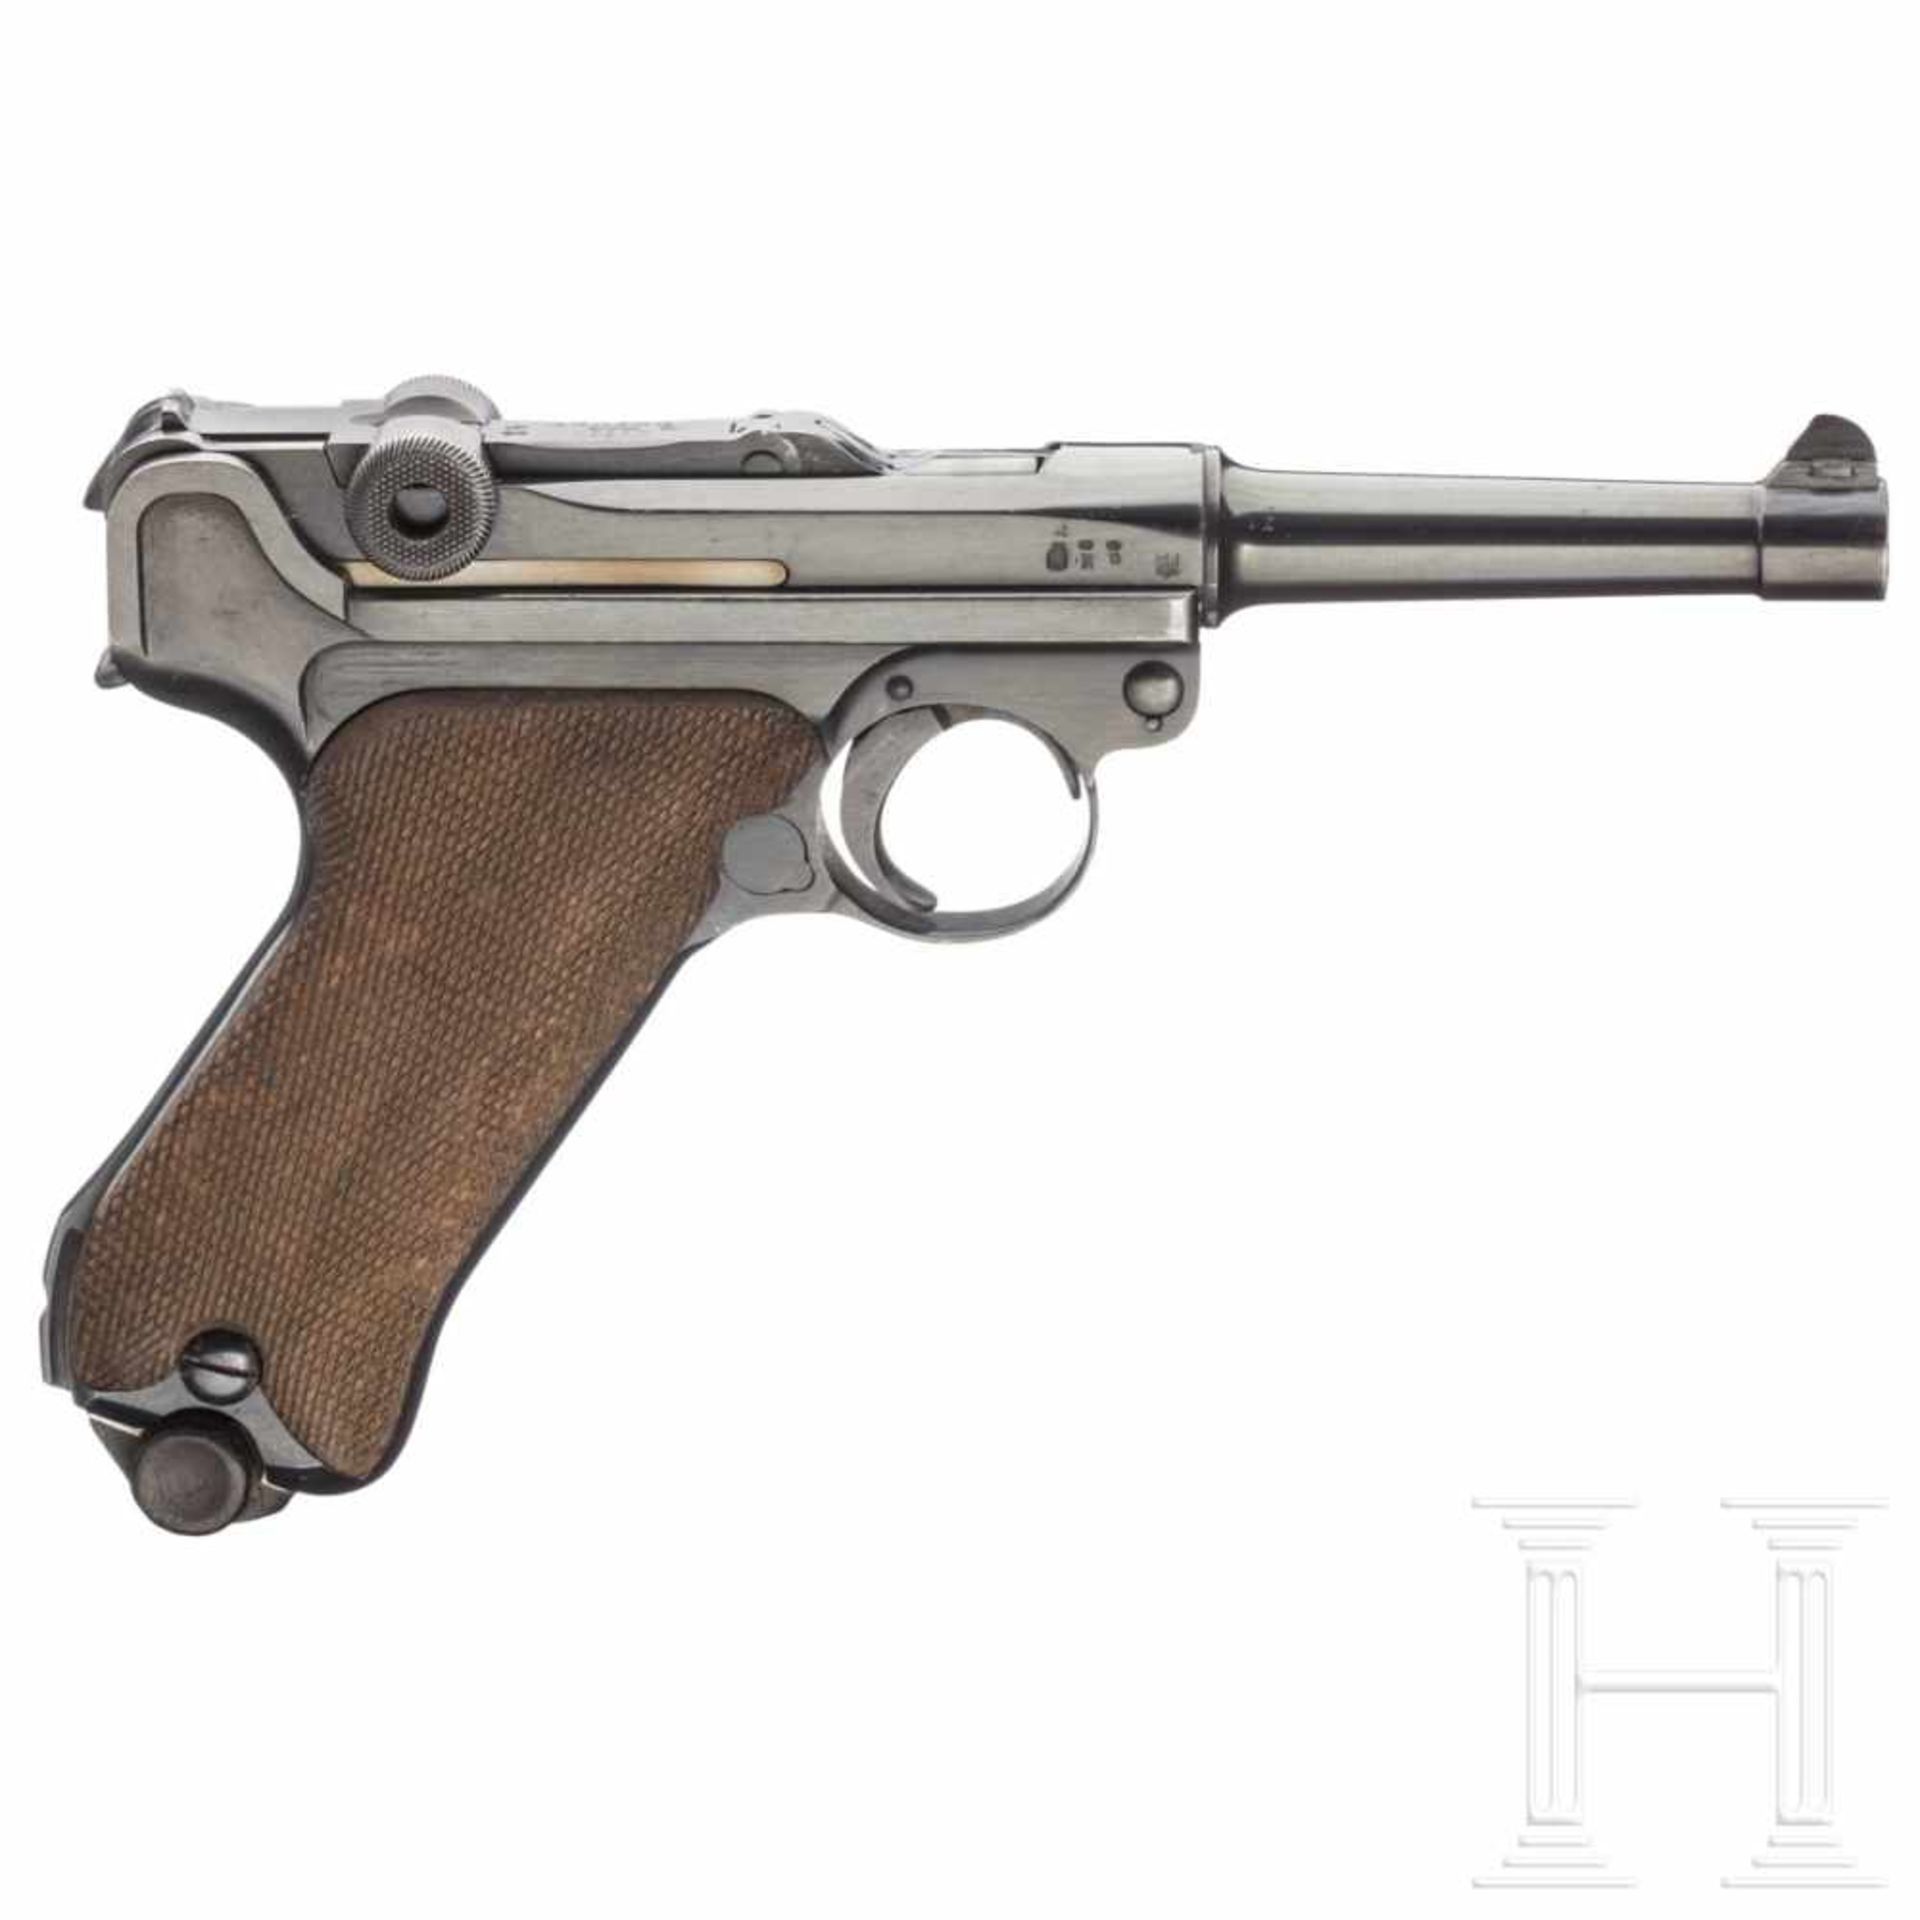 Pistole 08, ErfurtKal. 9mm Luger, Nr. 9943, Nummerngleich, inkl. Schlagbolzen und Griffschalen. - Bild 2 aus 5